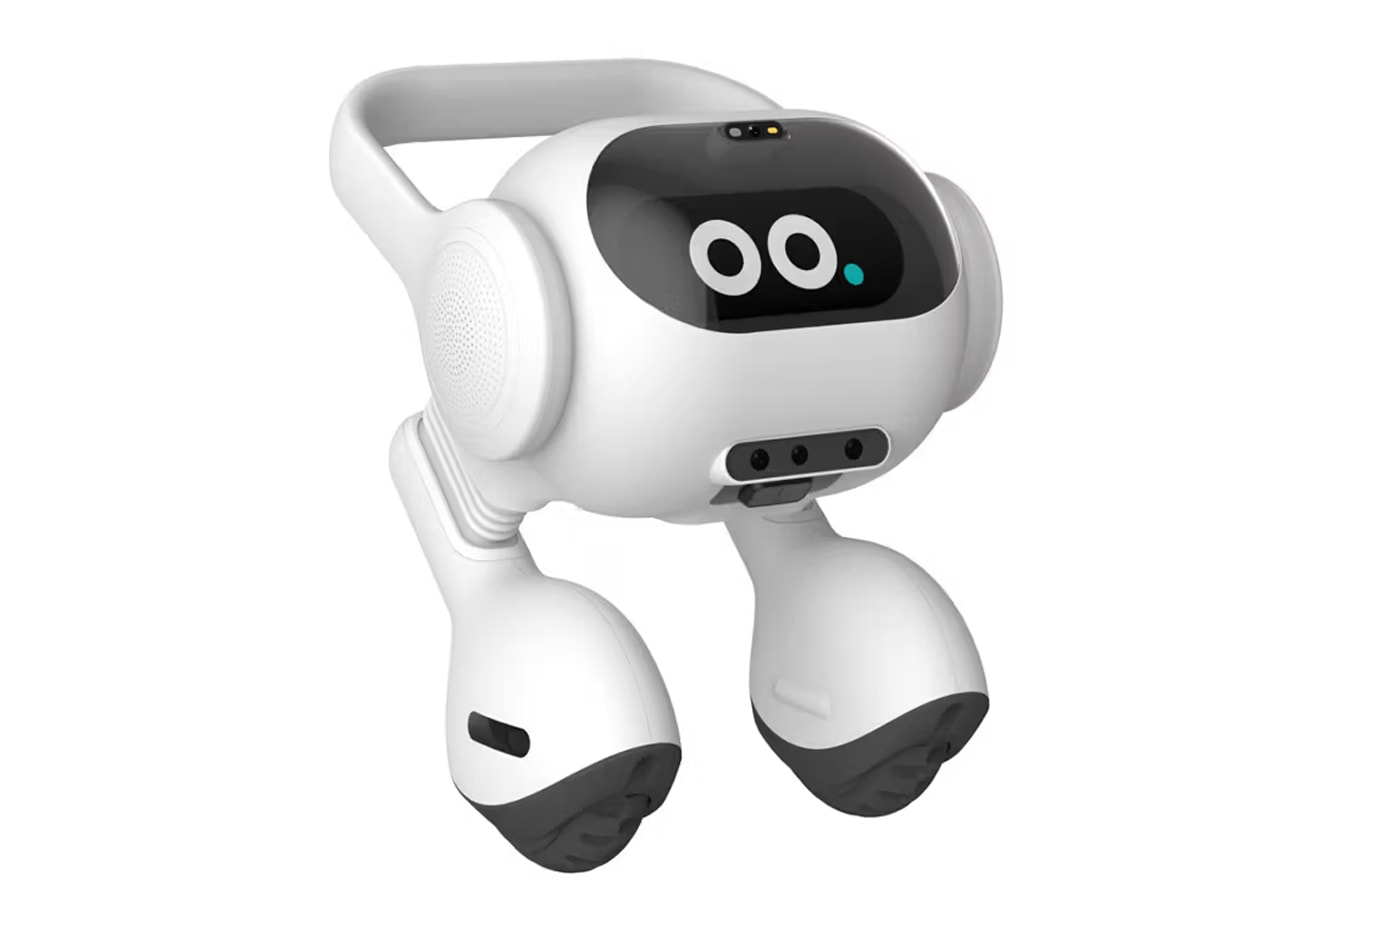 lg ai smart agent robot two wheels legs alexa similar appliances connect controls voice facial recognition commands